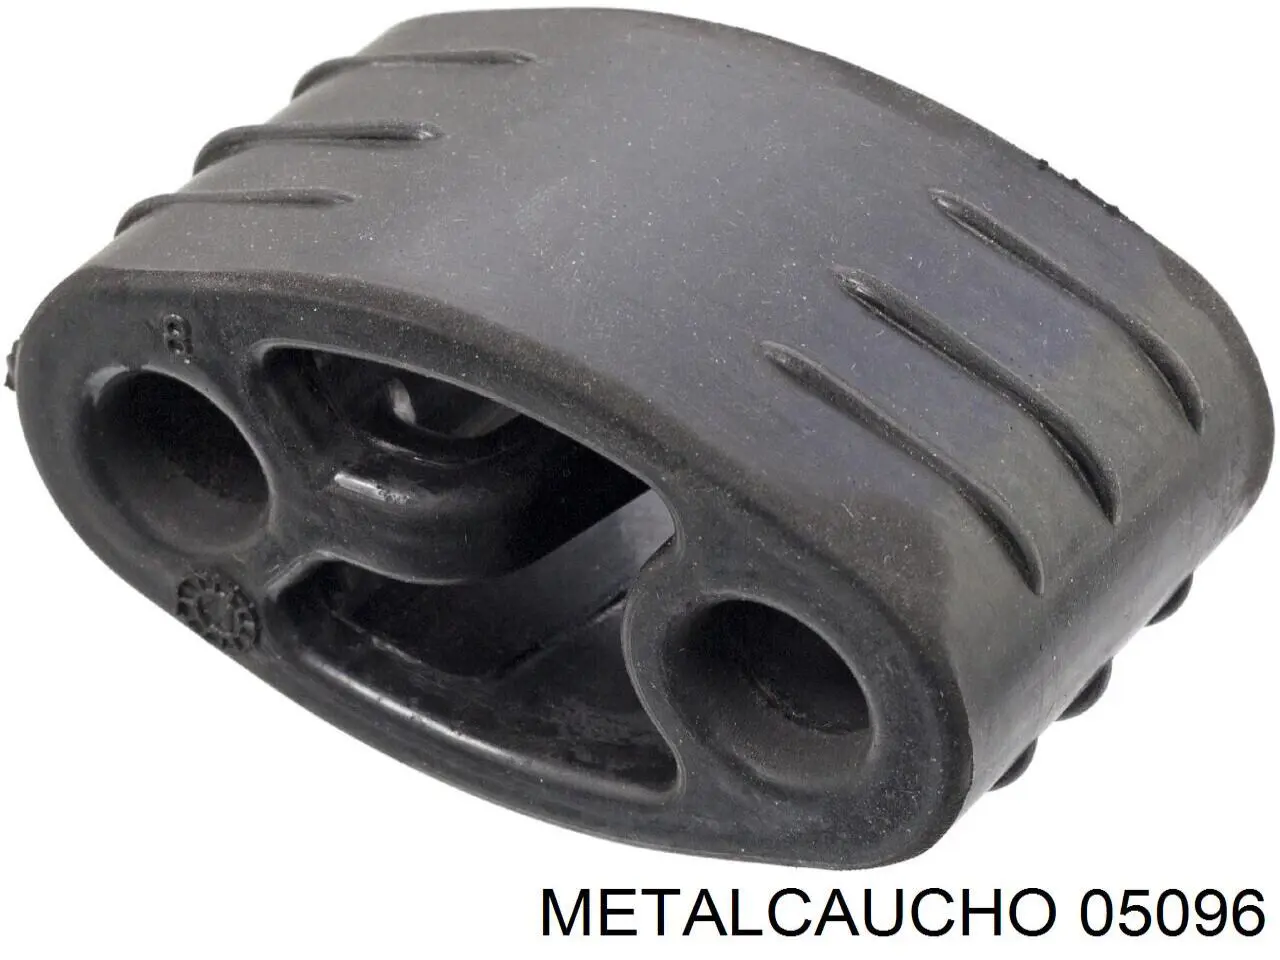 05096 Metalcaucho soporte, silenciador